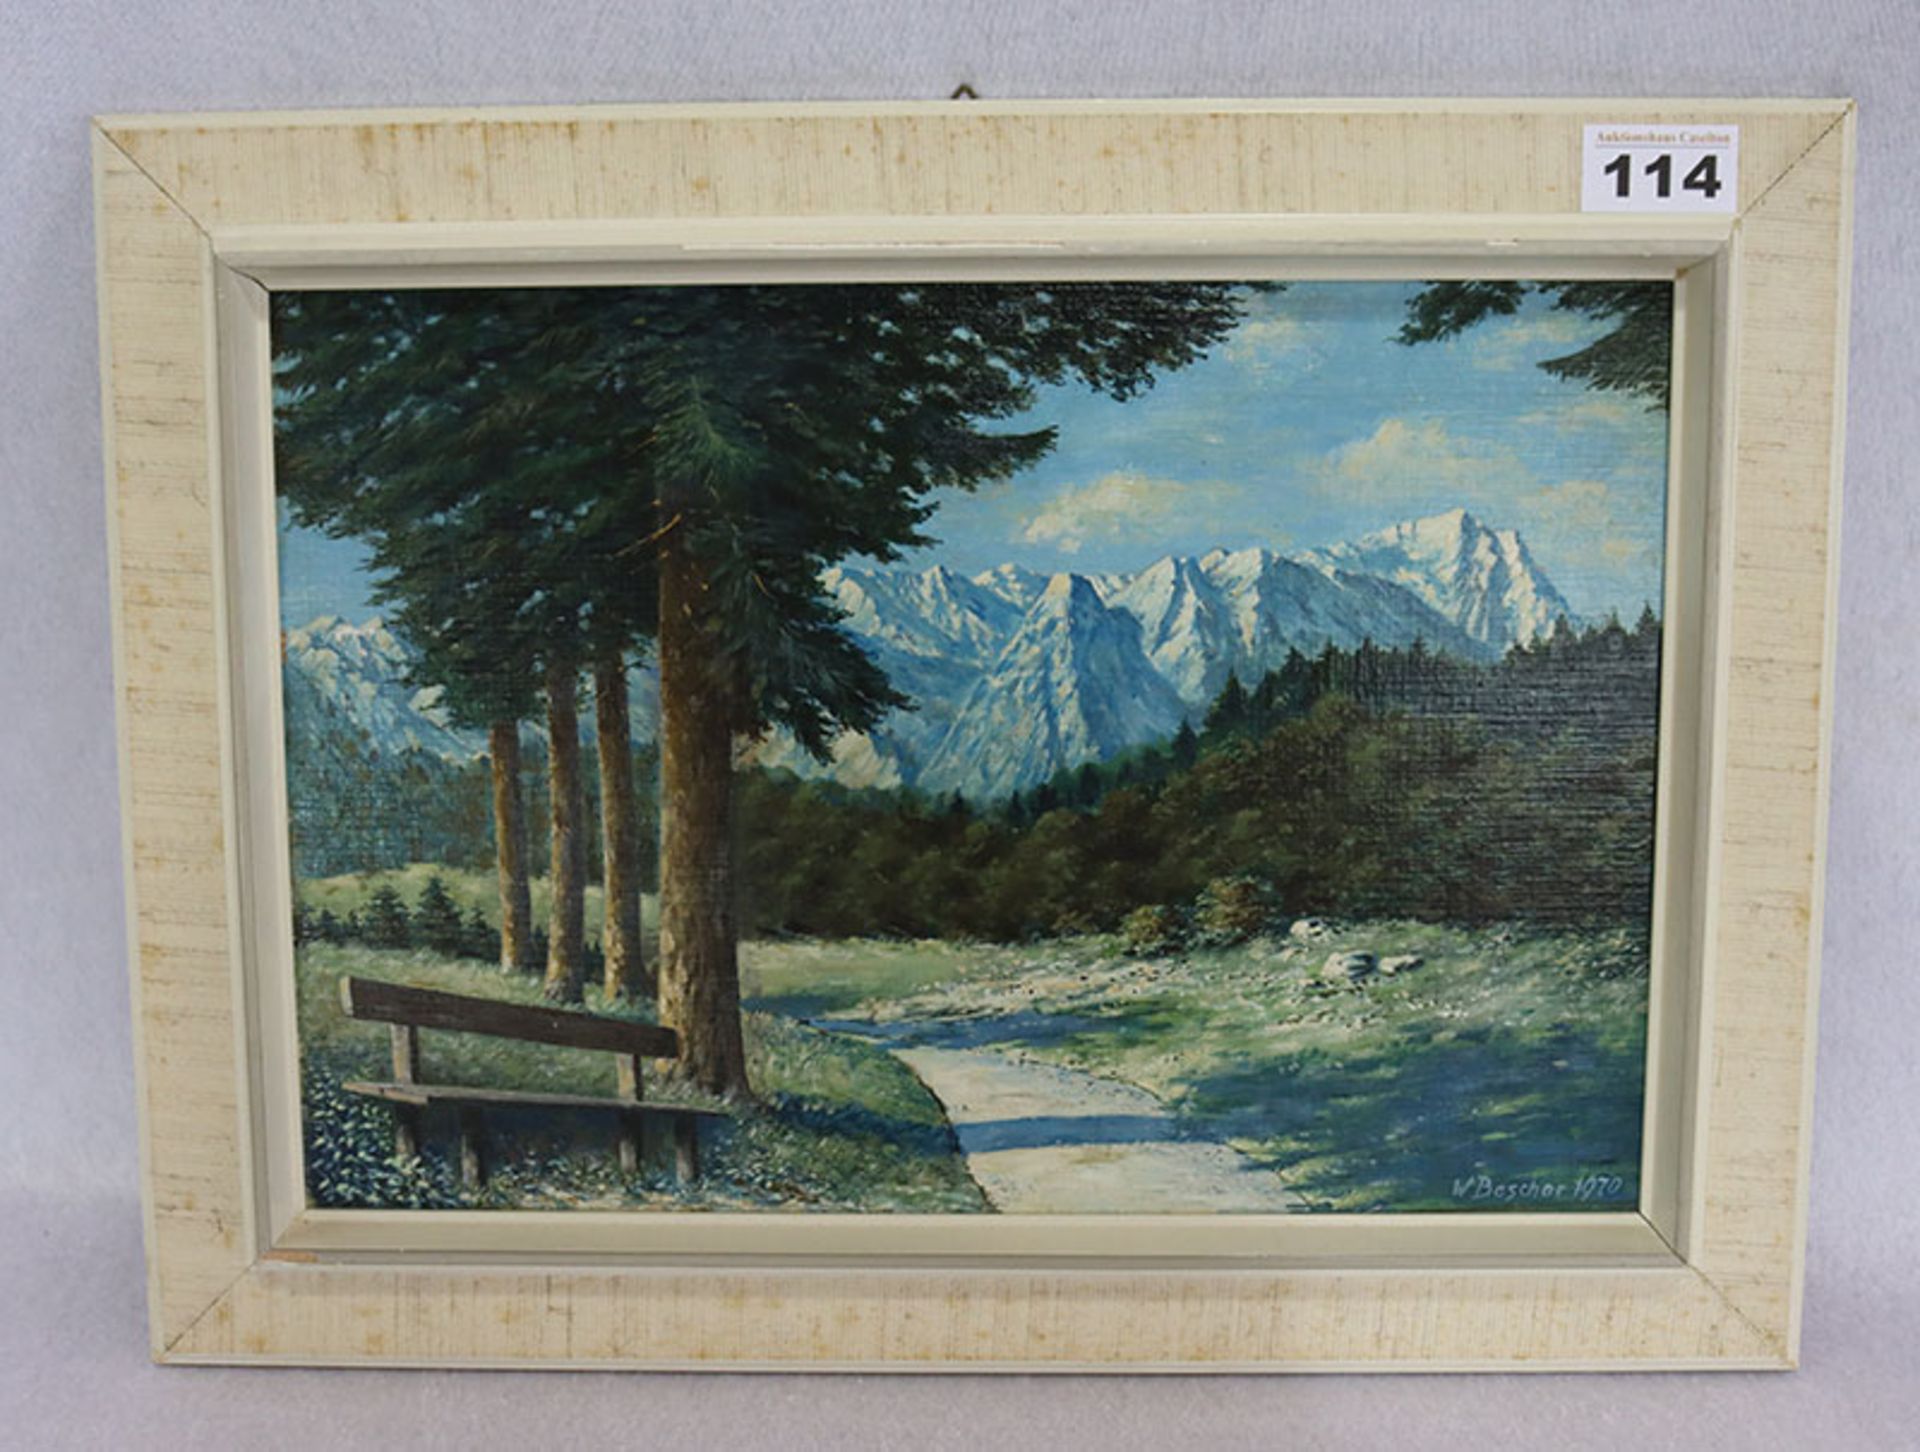 Gemälde ÖL/Malkarton 'Blick aufs Wettersteingebirge', signiert W. Beschor, 1970, gerahmt, Rahmen